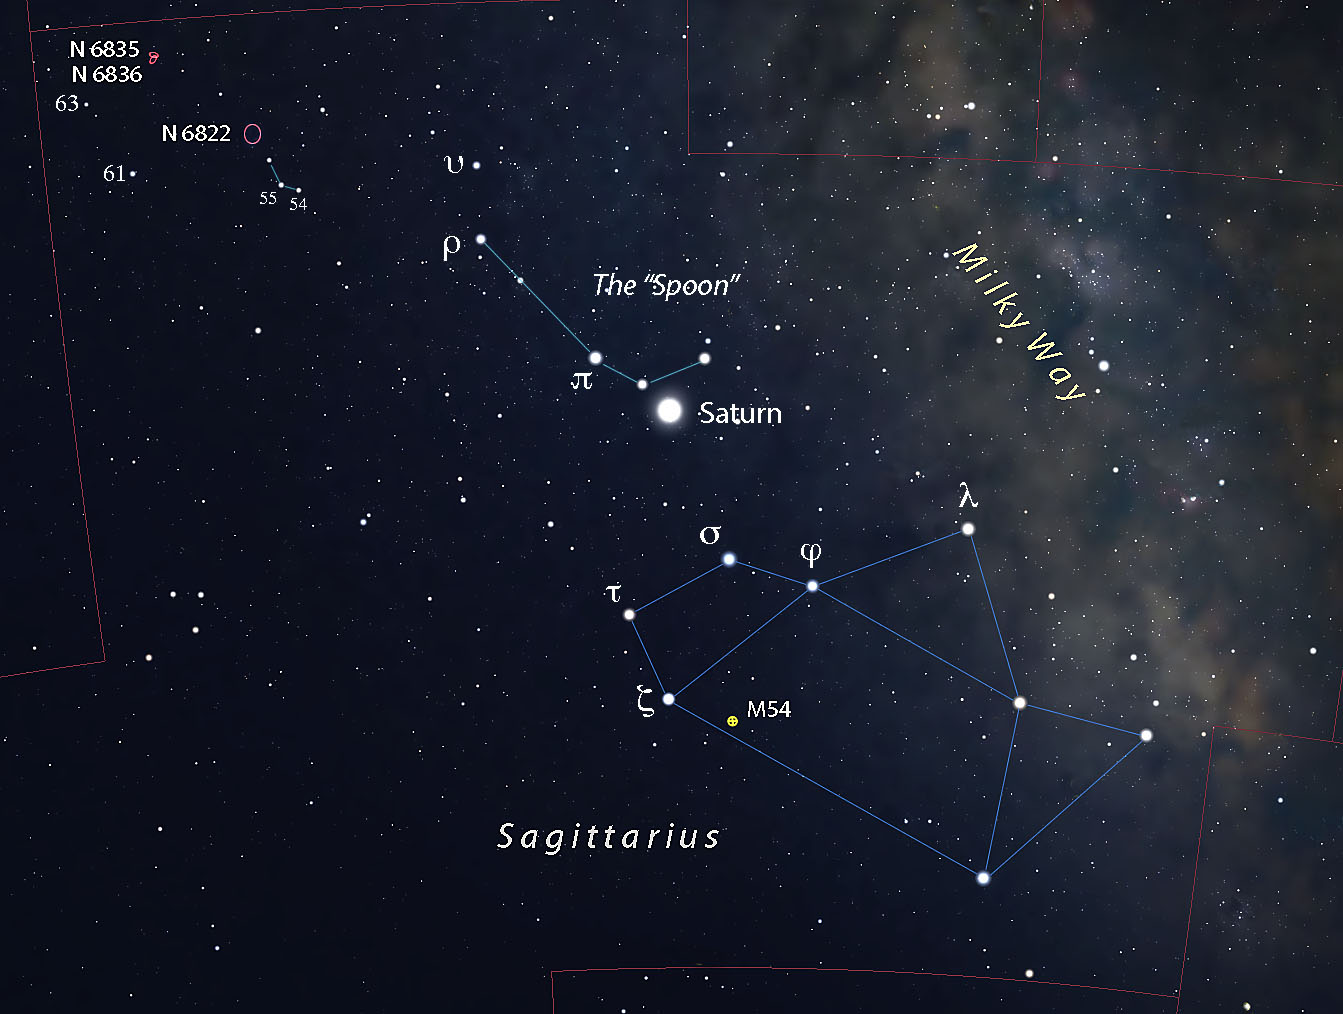 Deep look at Sagittarius